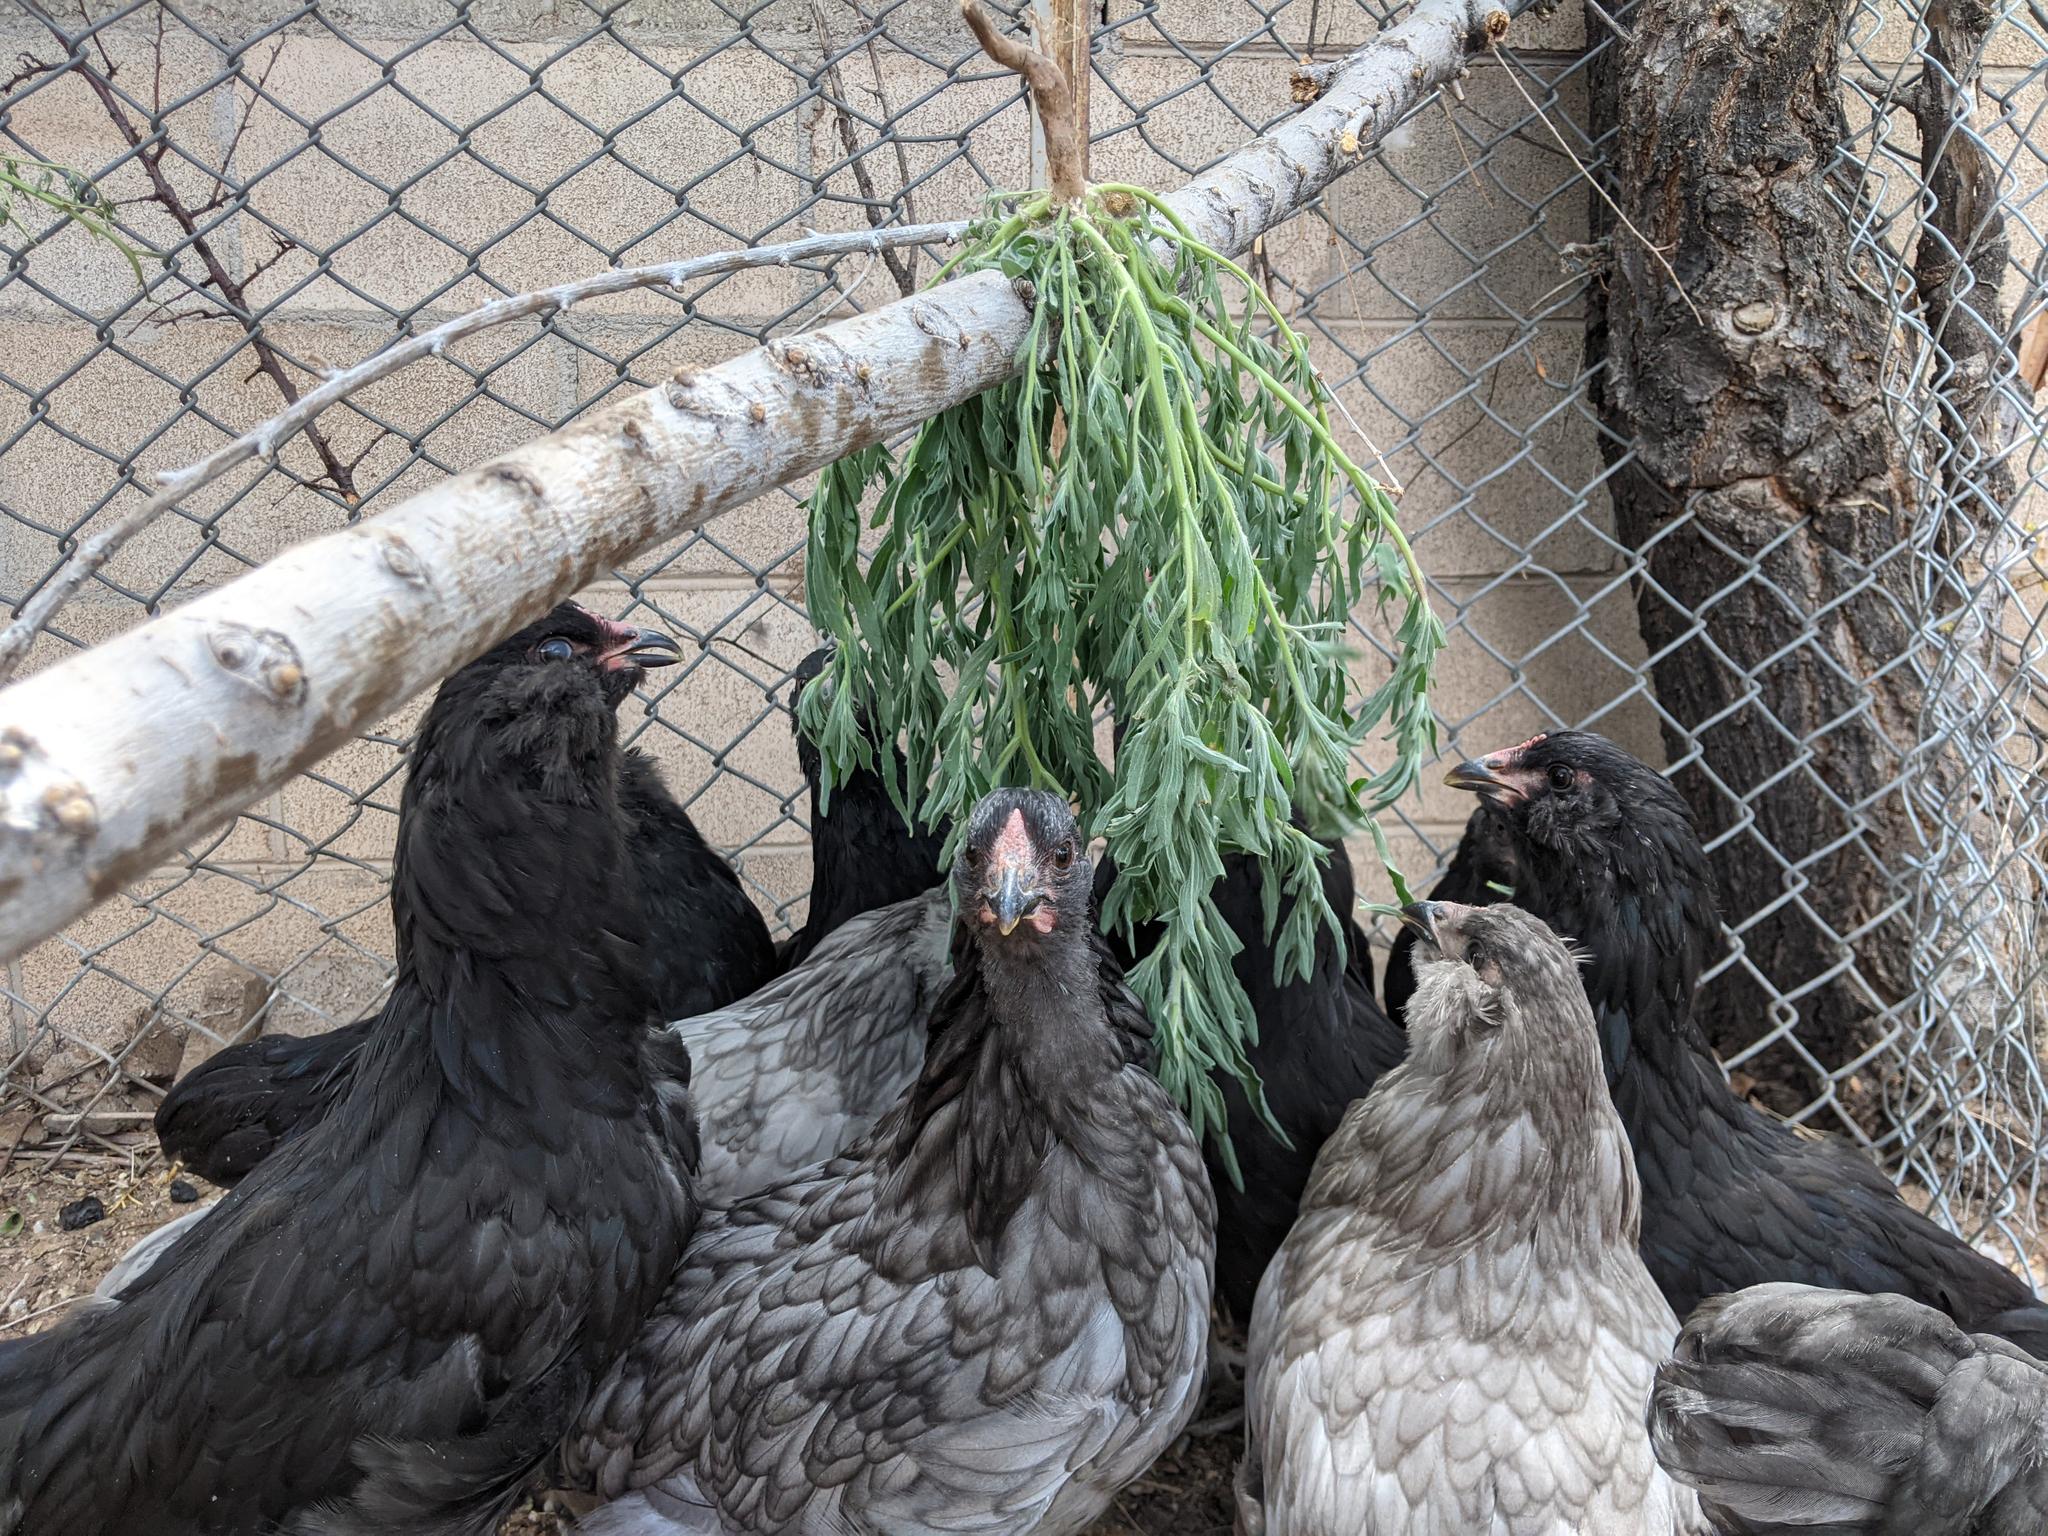 Chickens eating kochia